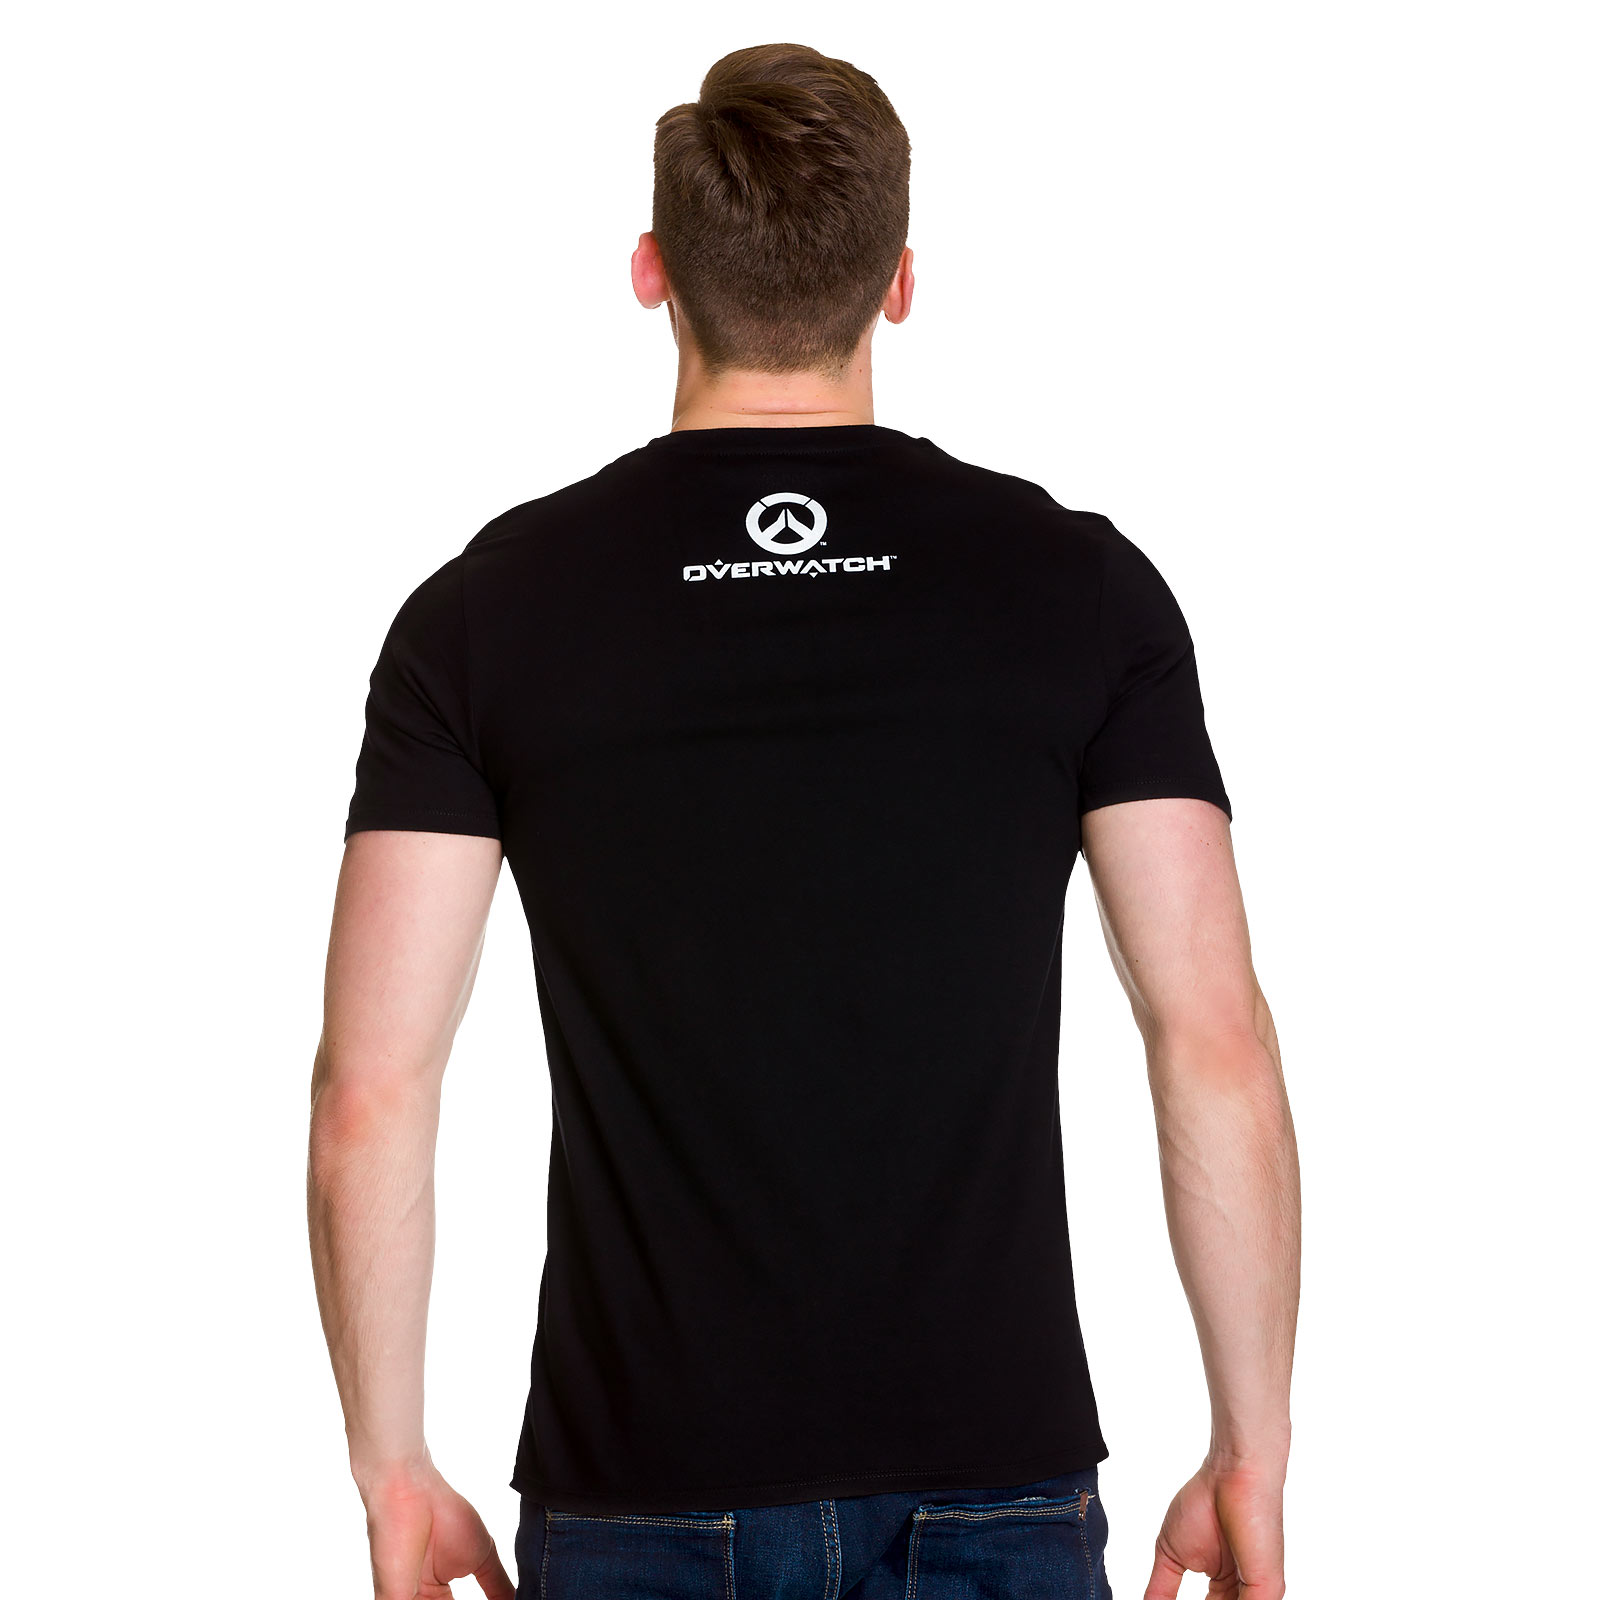 Overwatch - Torbjörn's Workshop T-Shirt Zwart